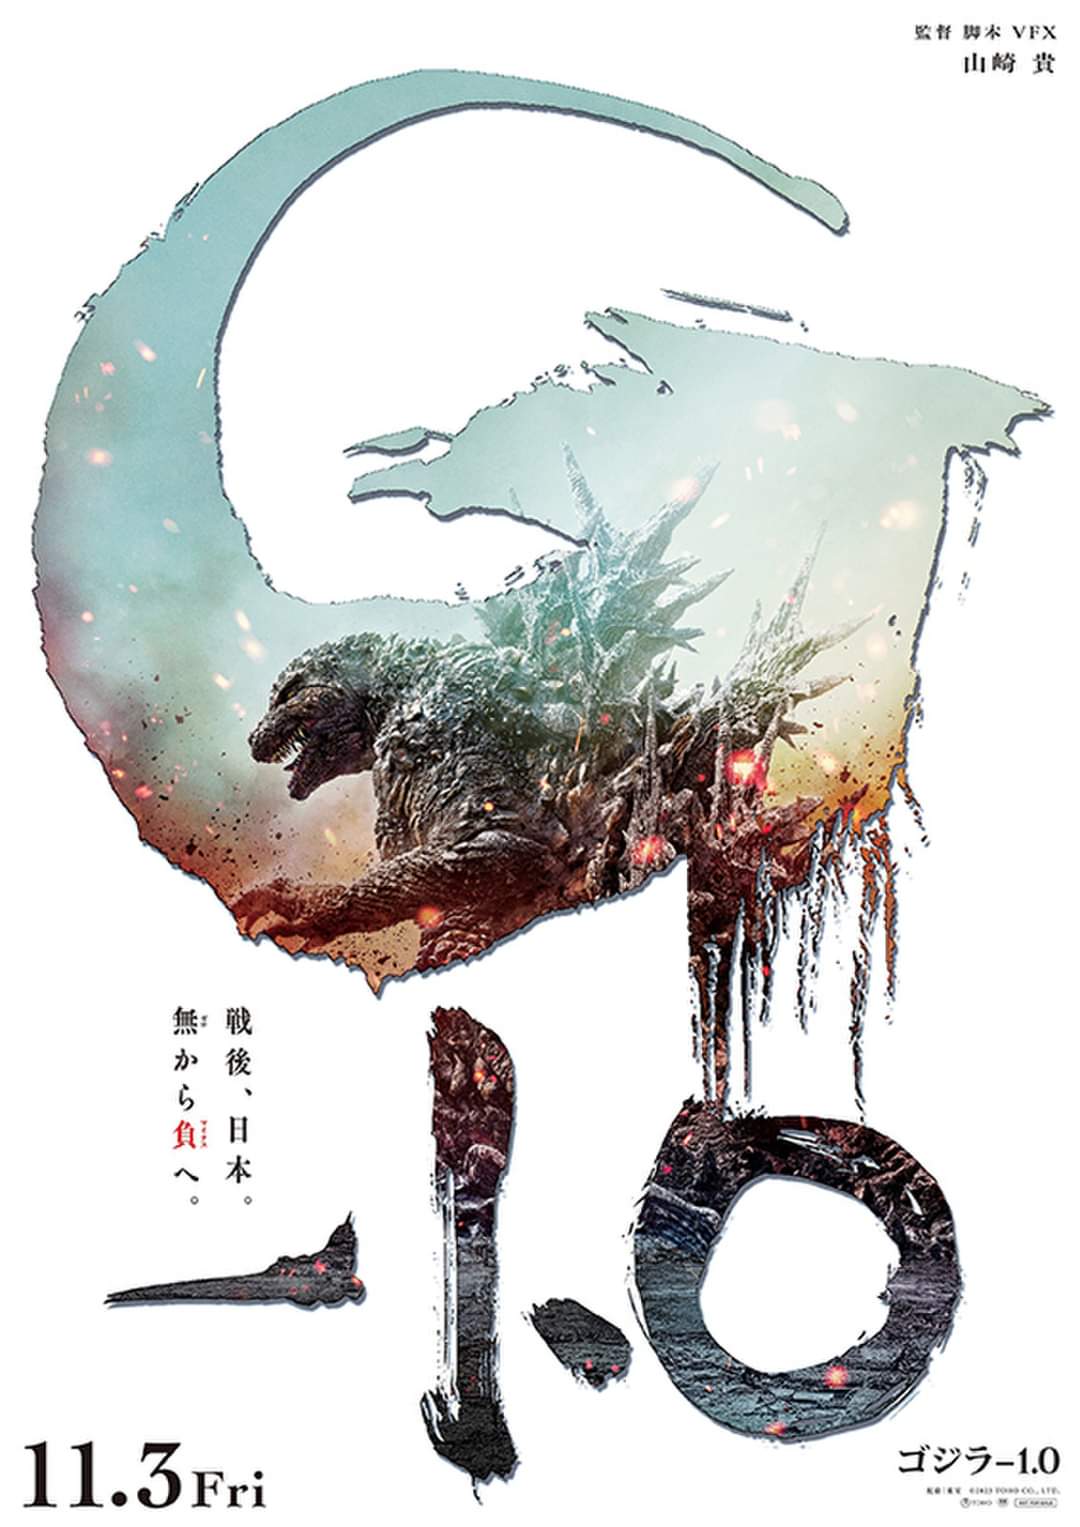 Godzilla: Minus One Poster